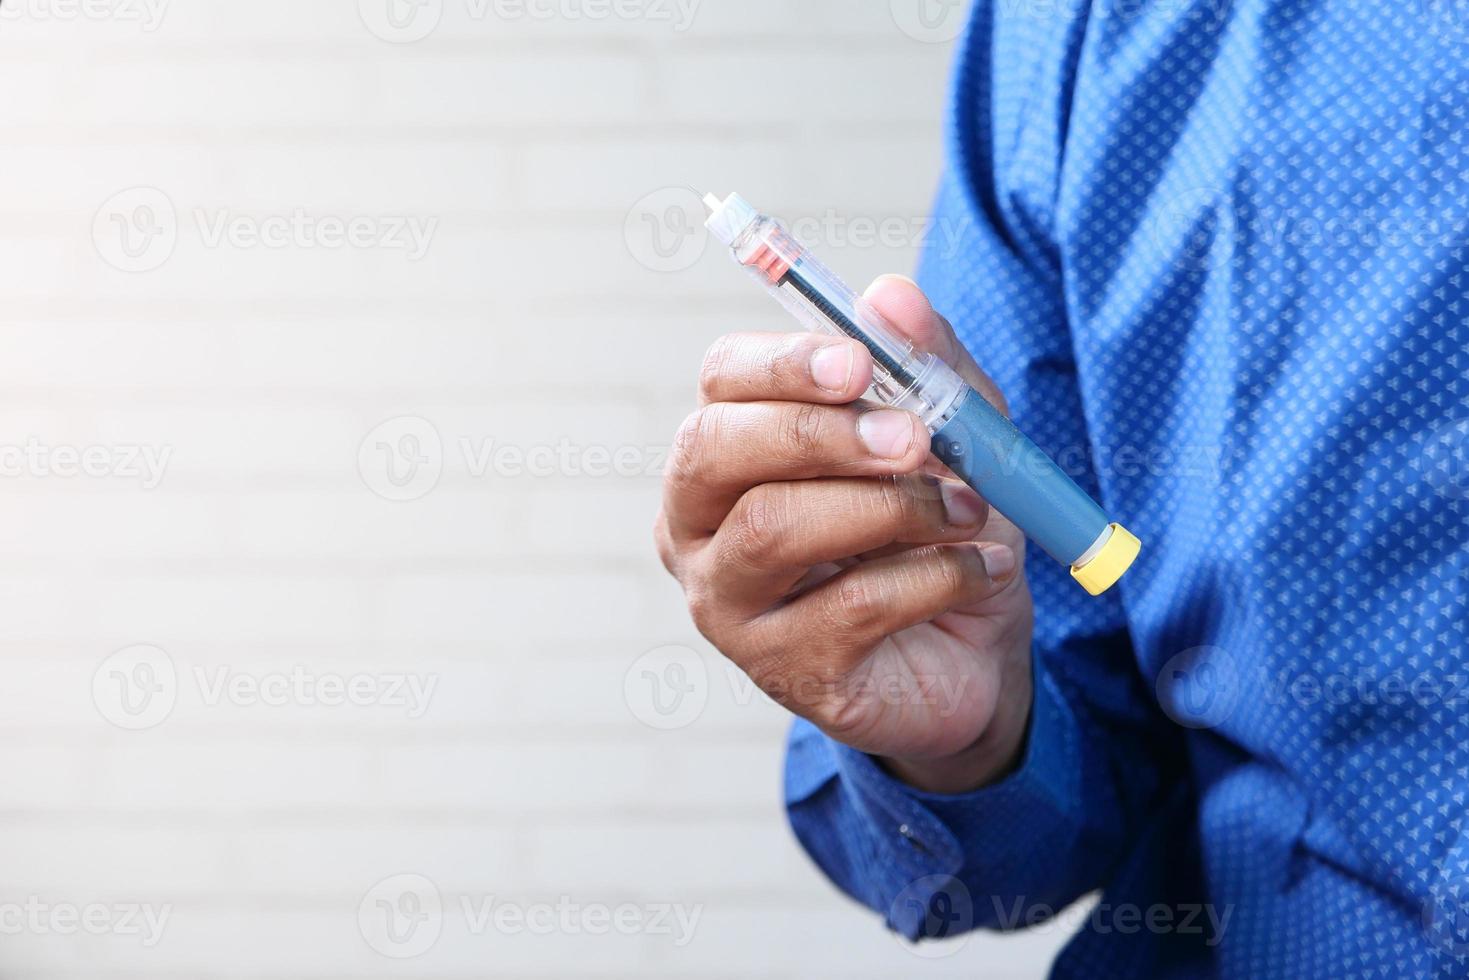 insulinepennen met exemplaarruimte foto